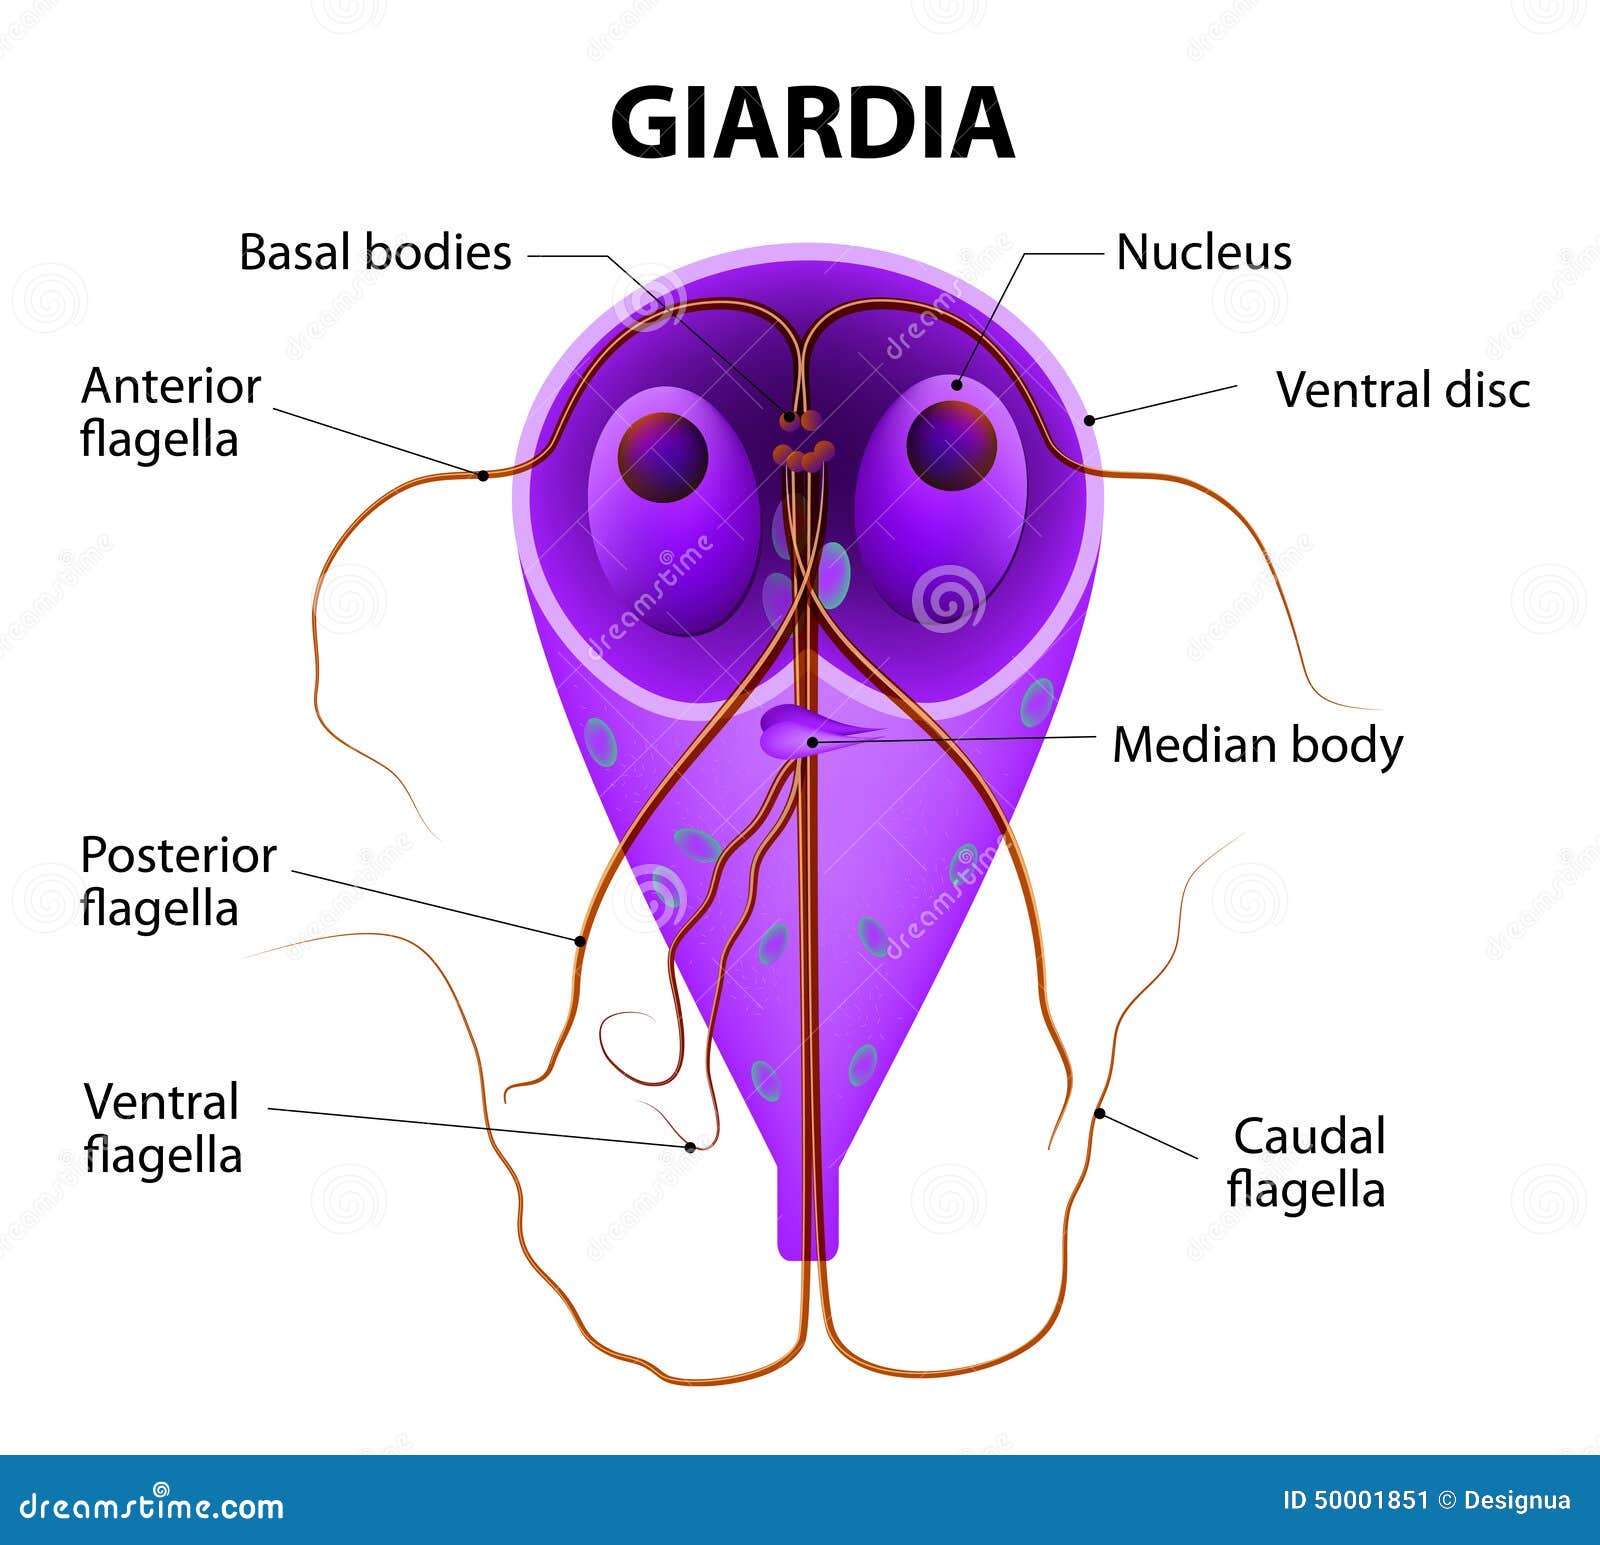 giardia duodenalis prévention a paraziták három nap múlva kerülnek ki